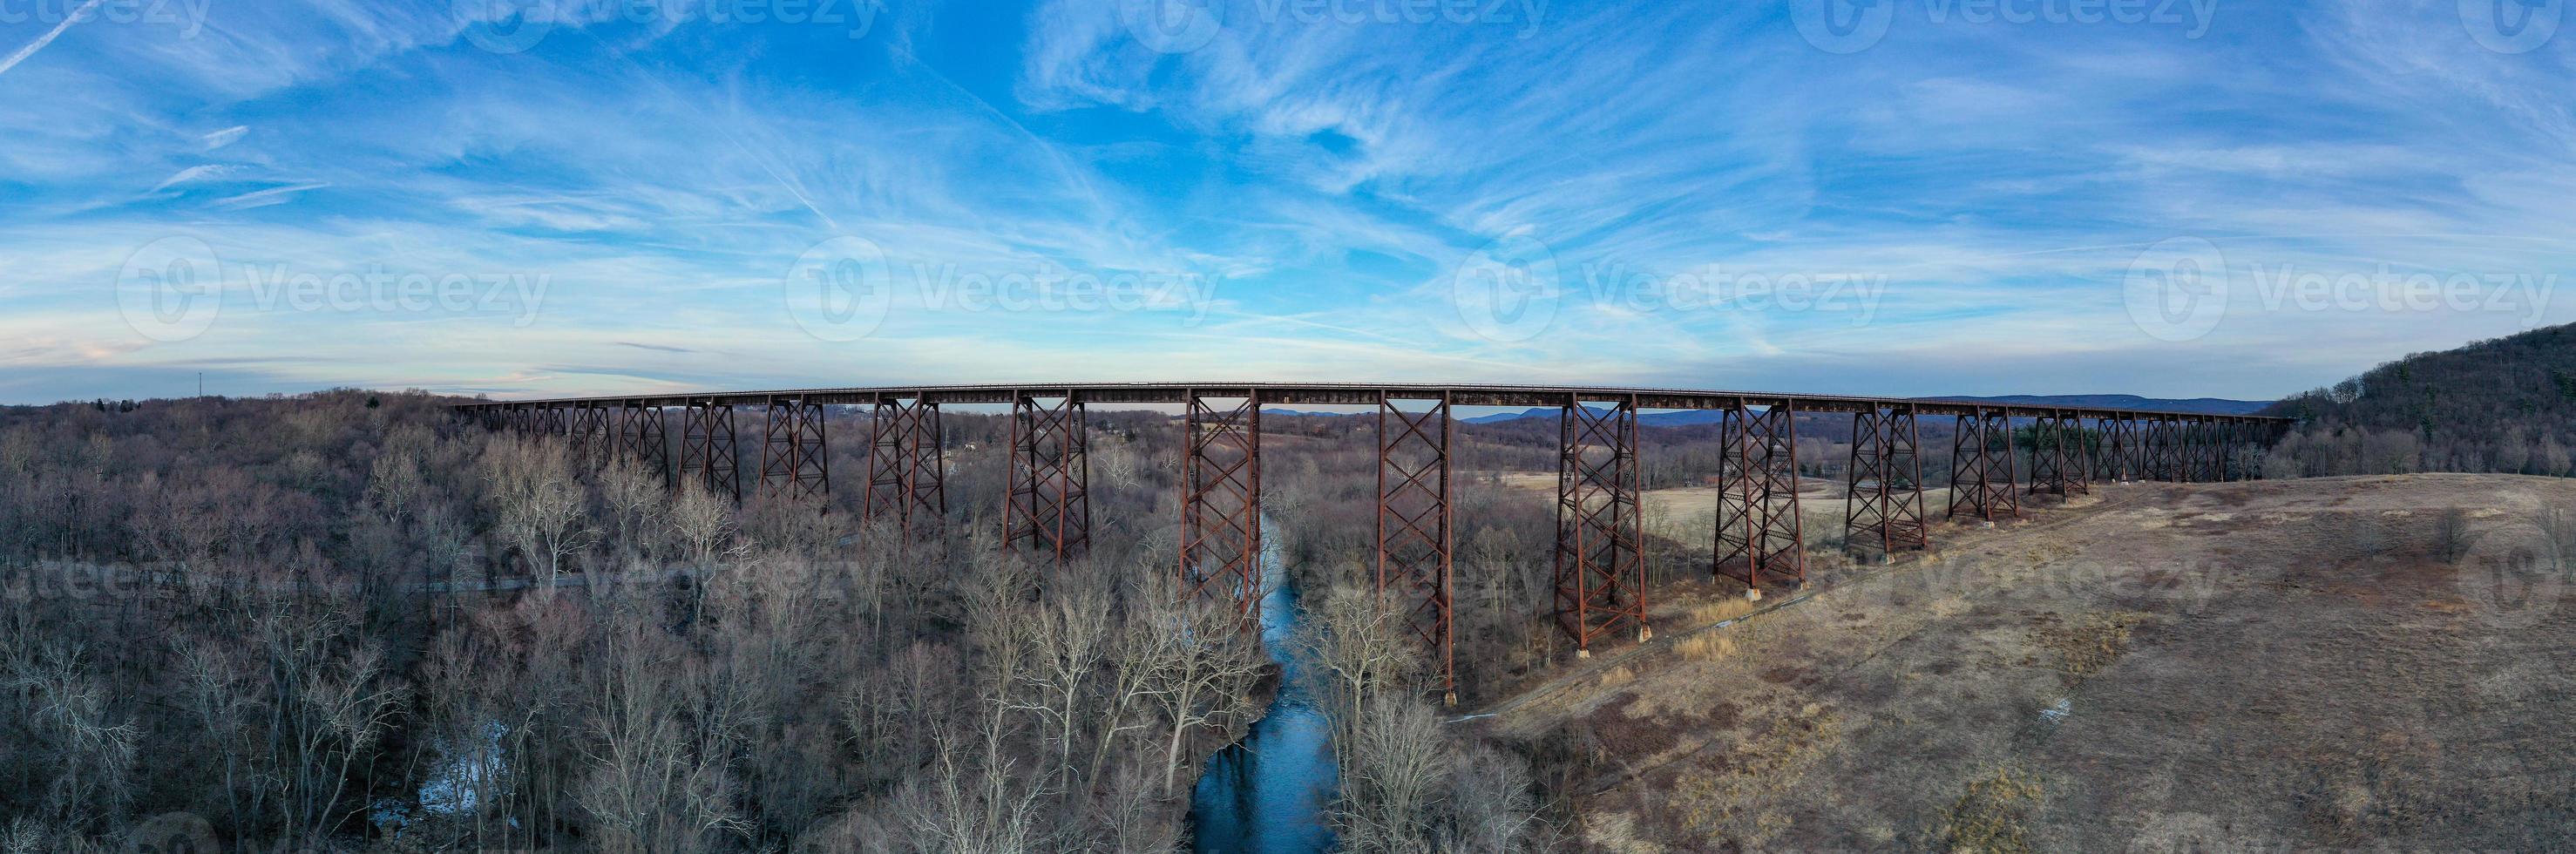 caballete del viaducto de moodna. el viaducto de moodna es un caballete de ferrocarril de hierro que se extiende sobre el arroyo moodna y su valle en el extremo norte de la montaña schunemunk en cornwall, nueva york. foto